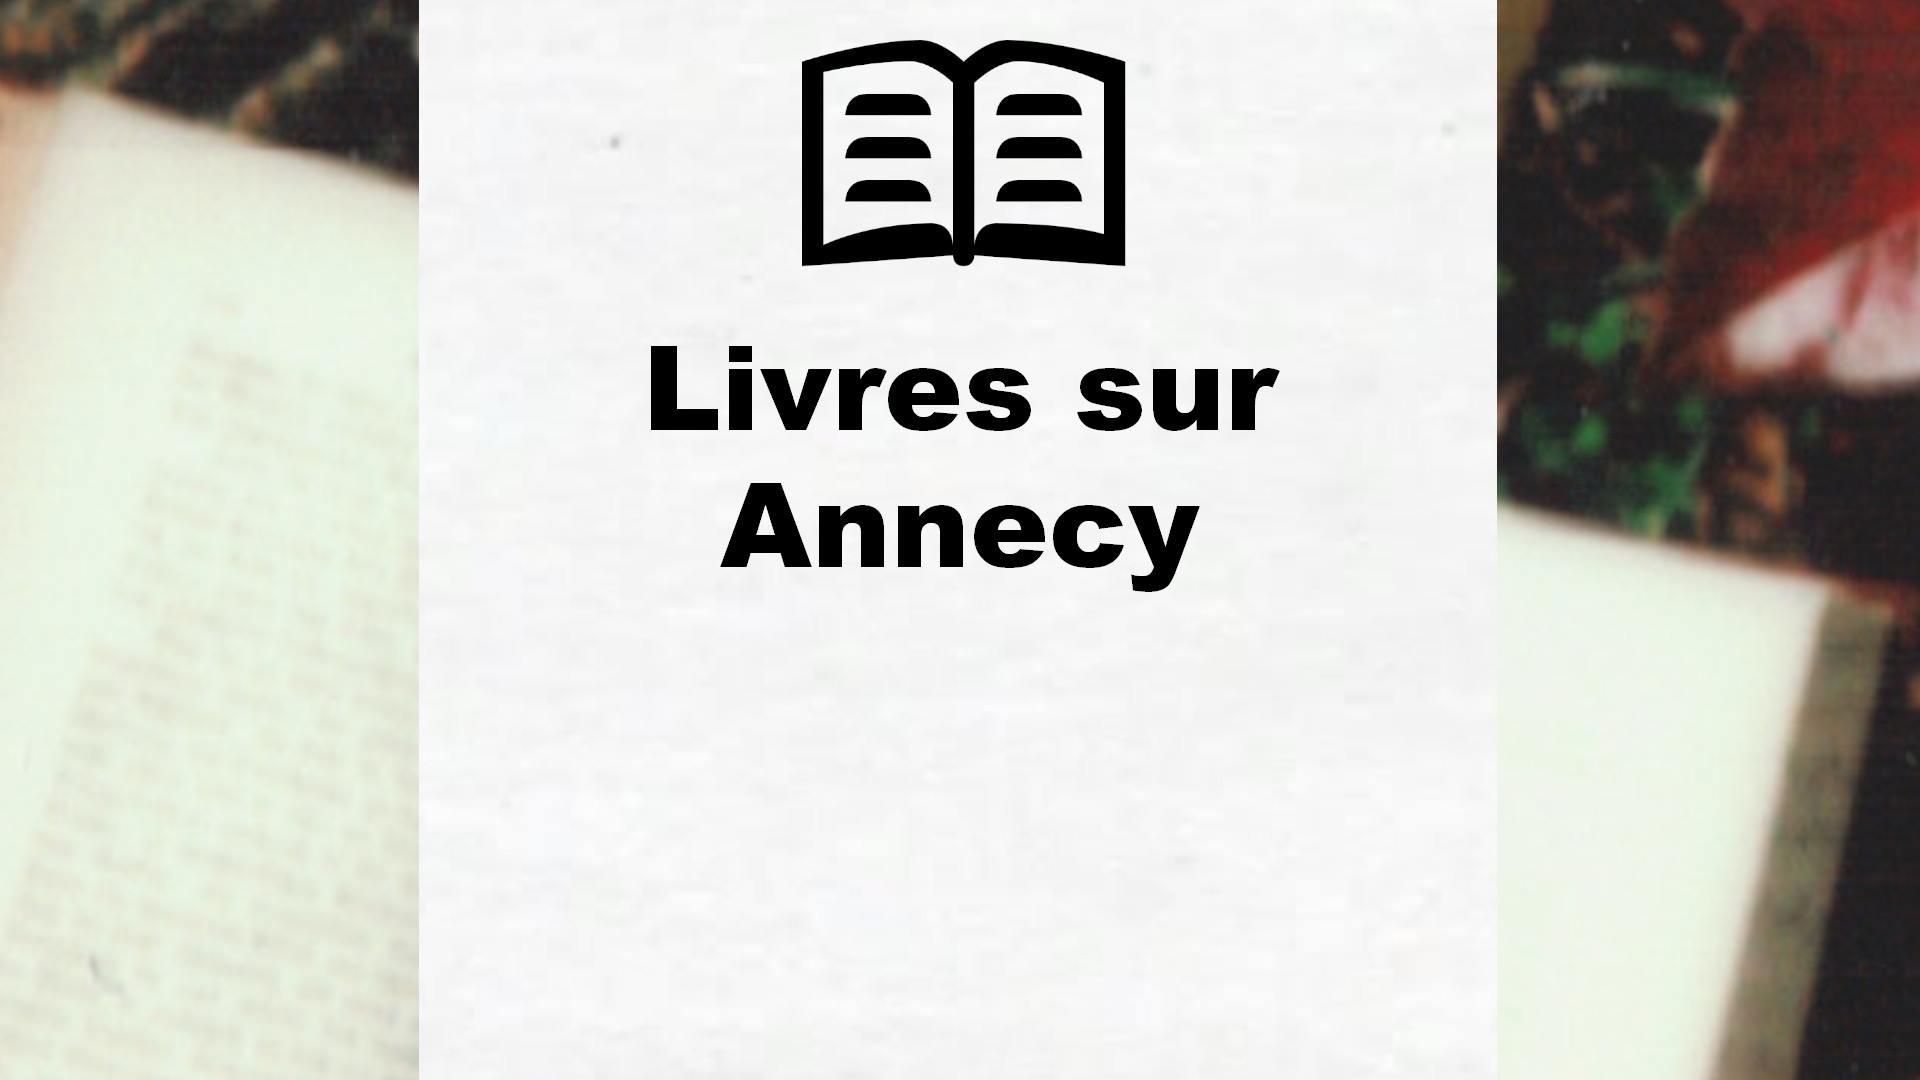 Livres sur Annecy